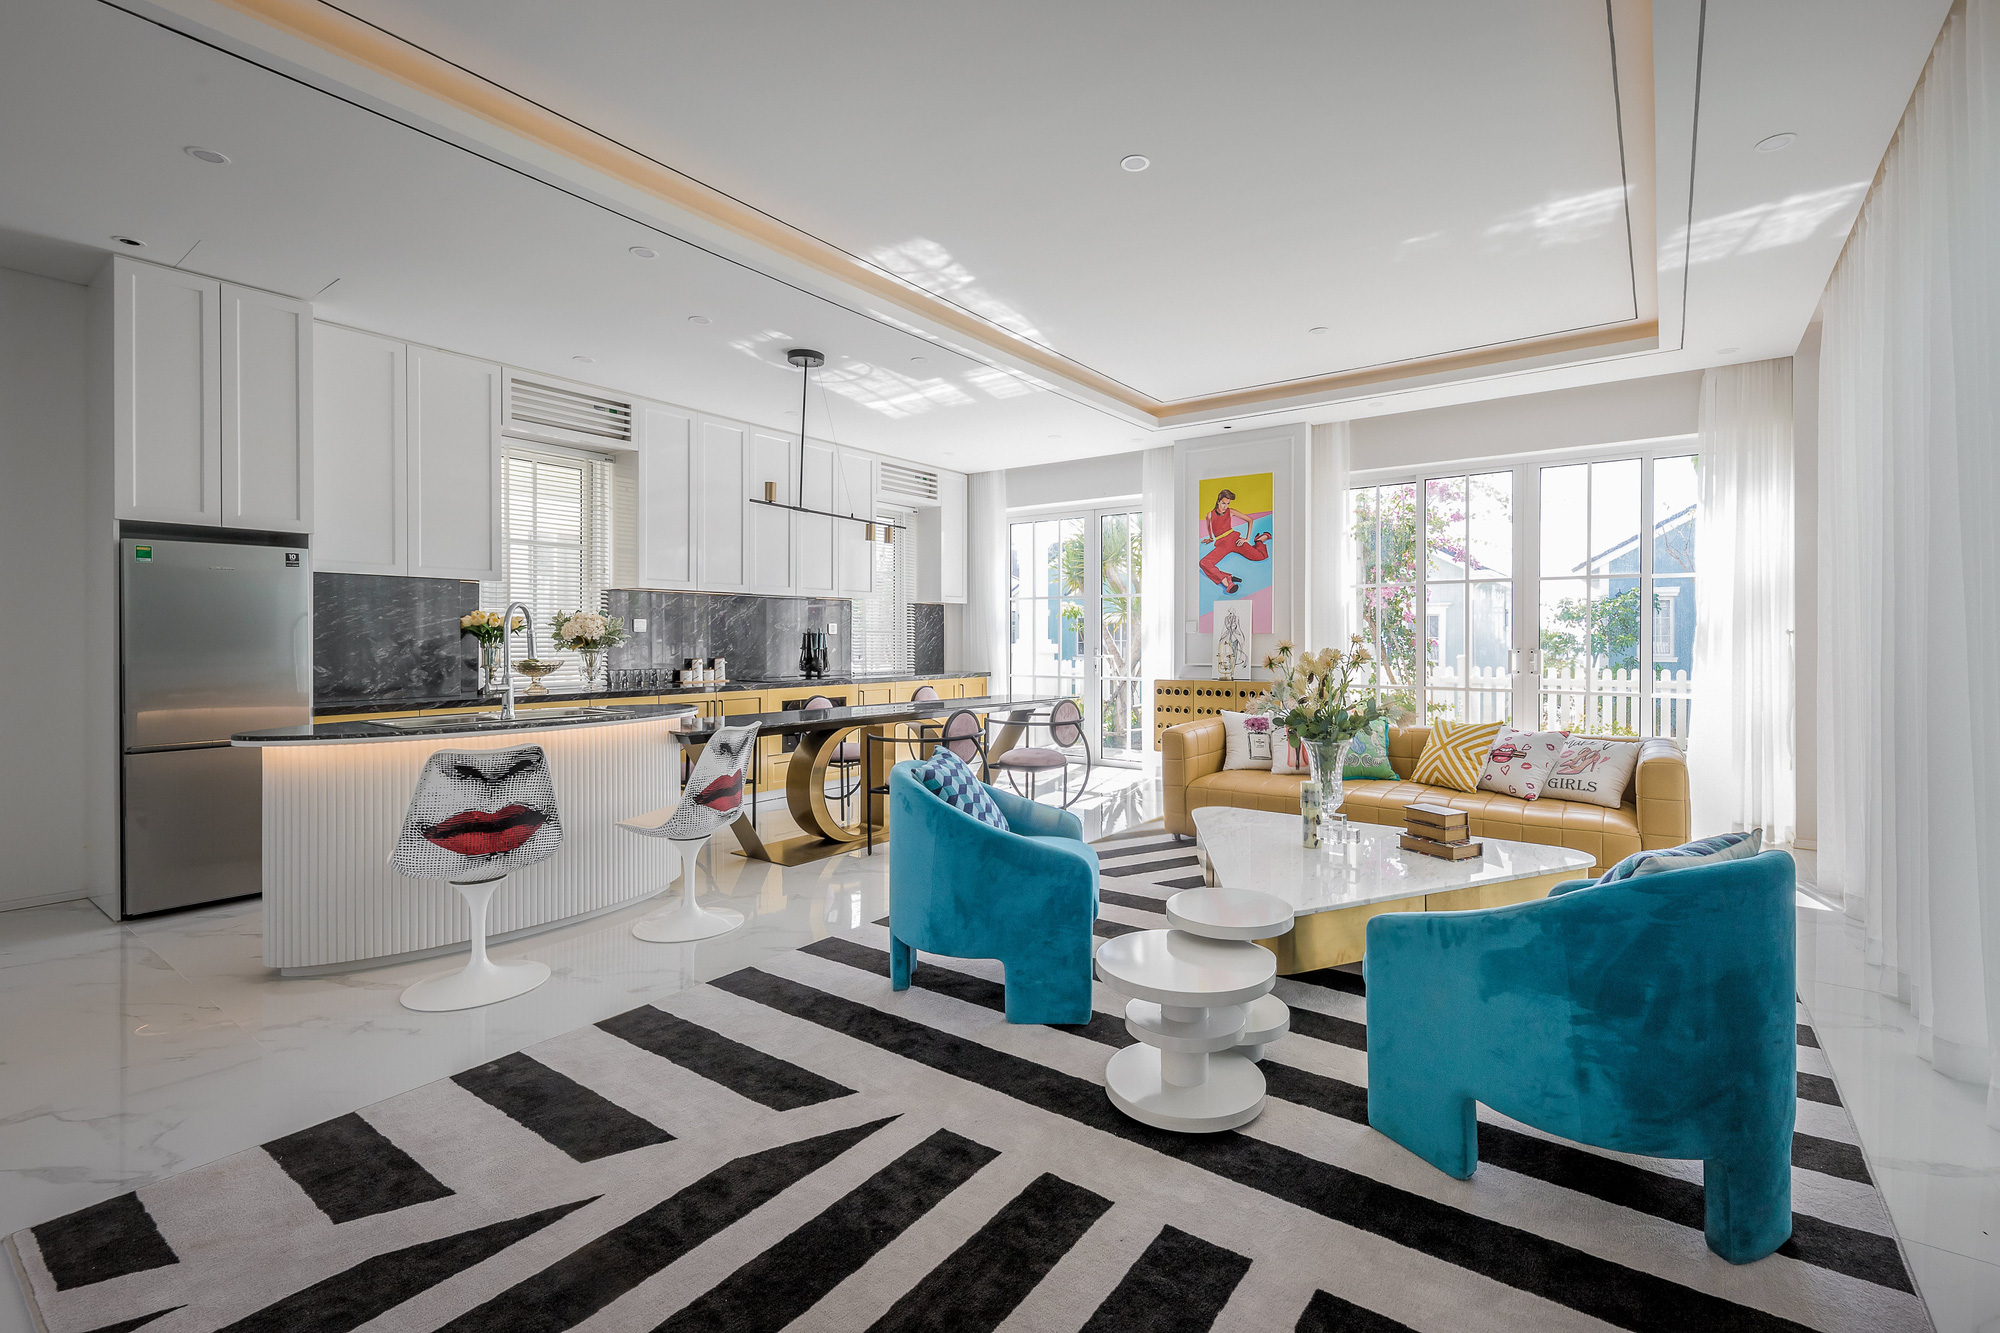 Căn villa 280m² trang bị nội thất giá 3 tỷ đẹp như bản giao hưởng nghệ thuật đương đại bên bờ biển Phan Thiết - Ảnh 7.